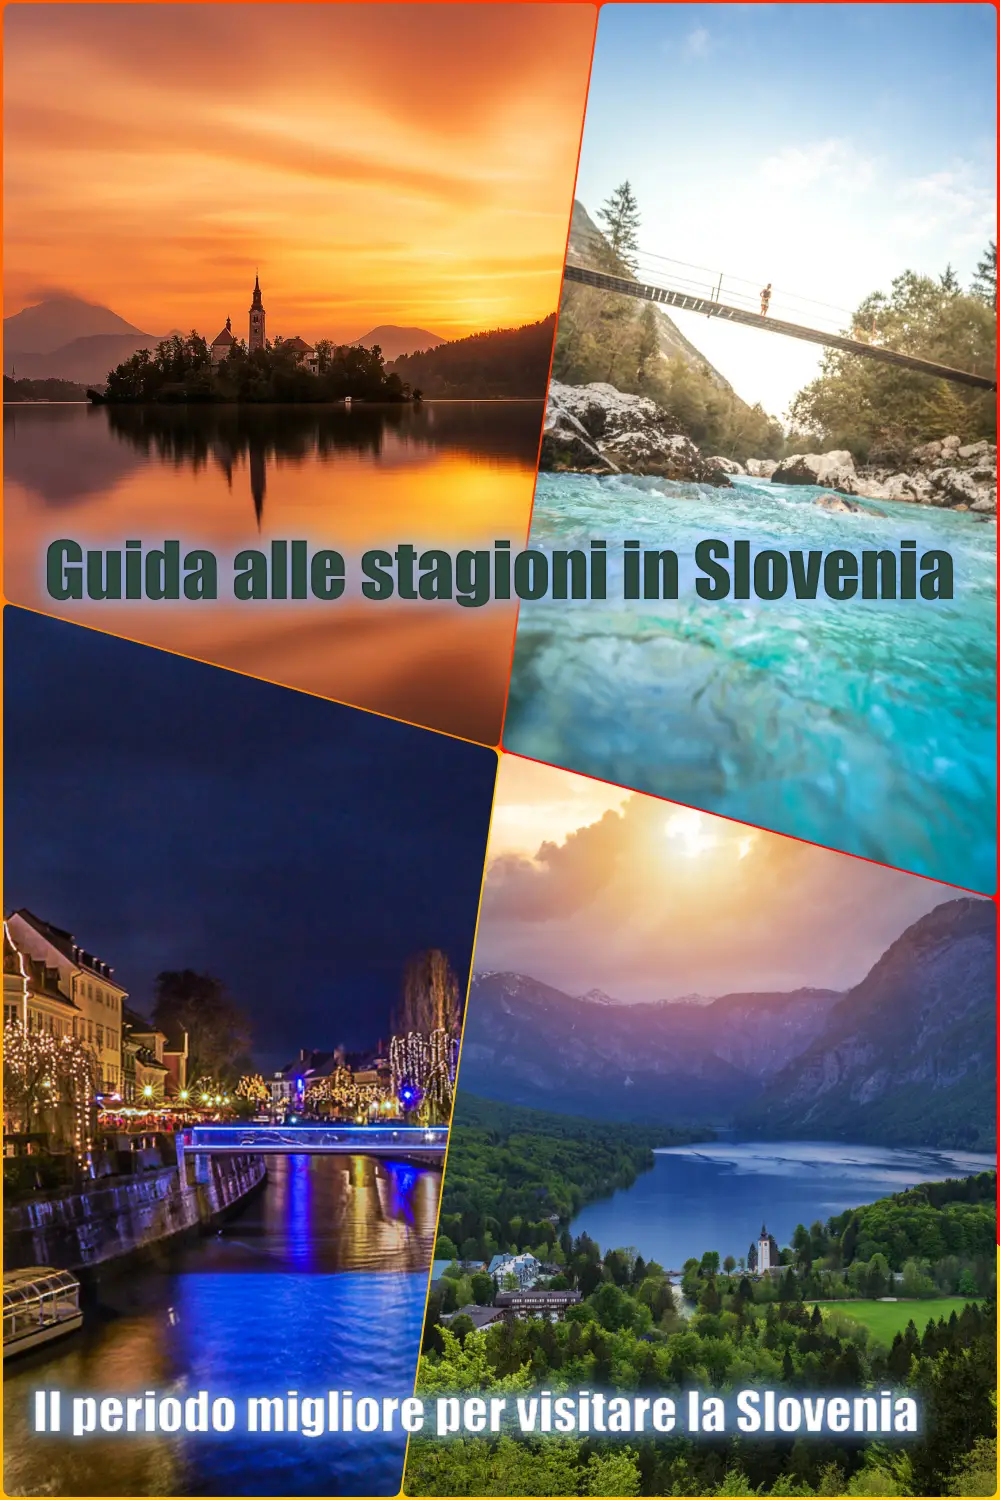 Il periodo migliore per visitare la Slovenia